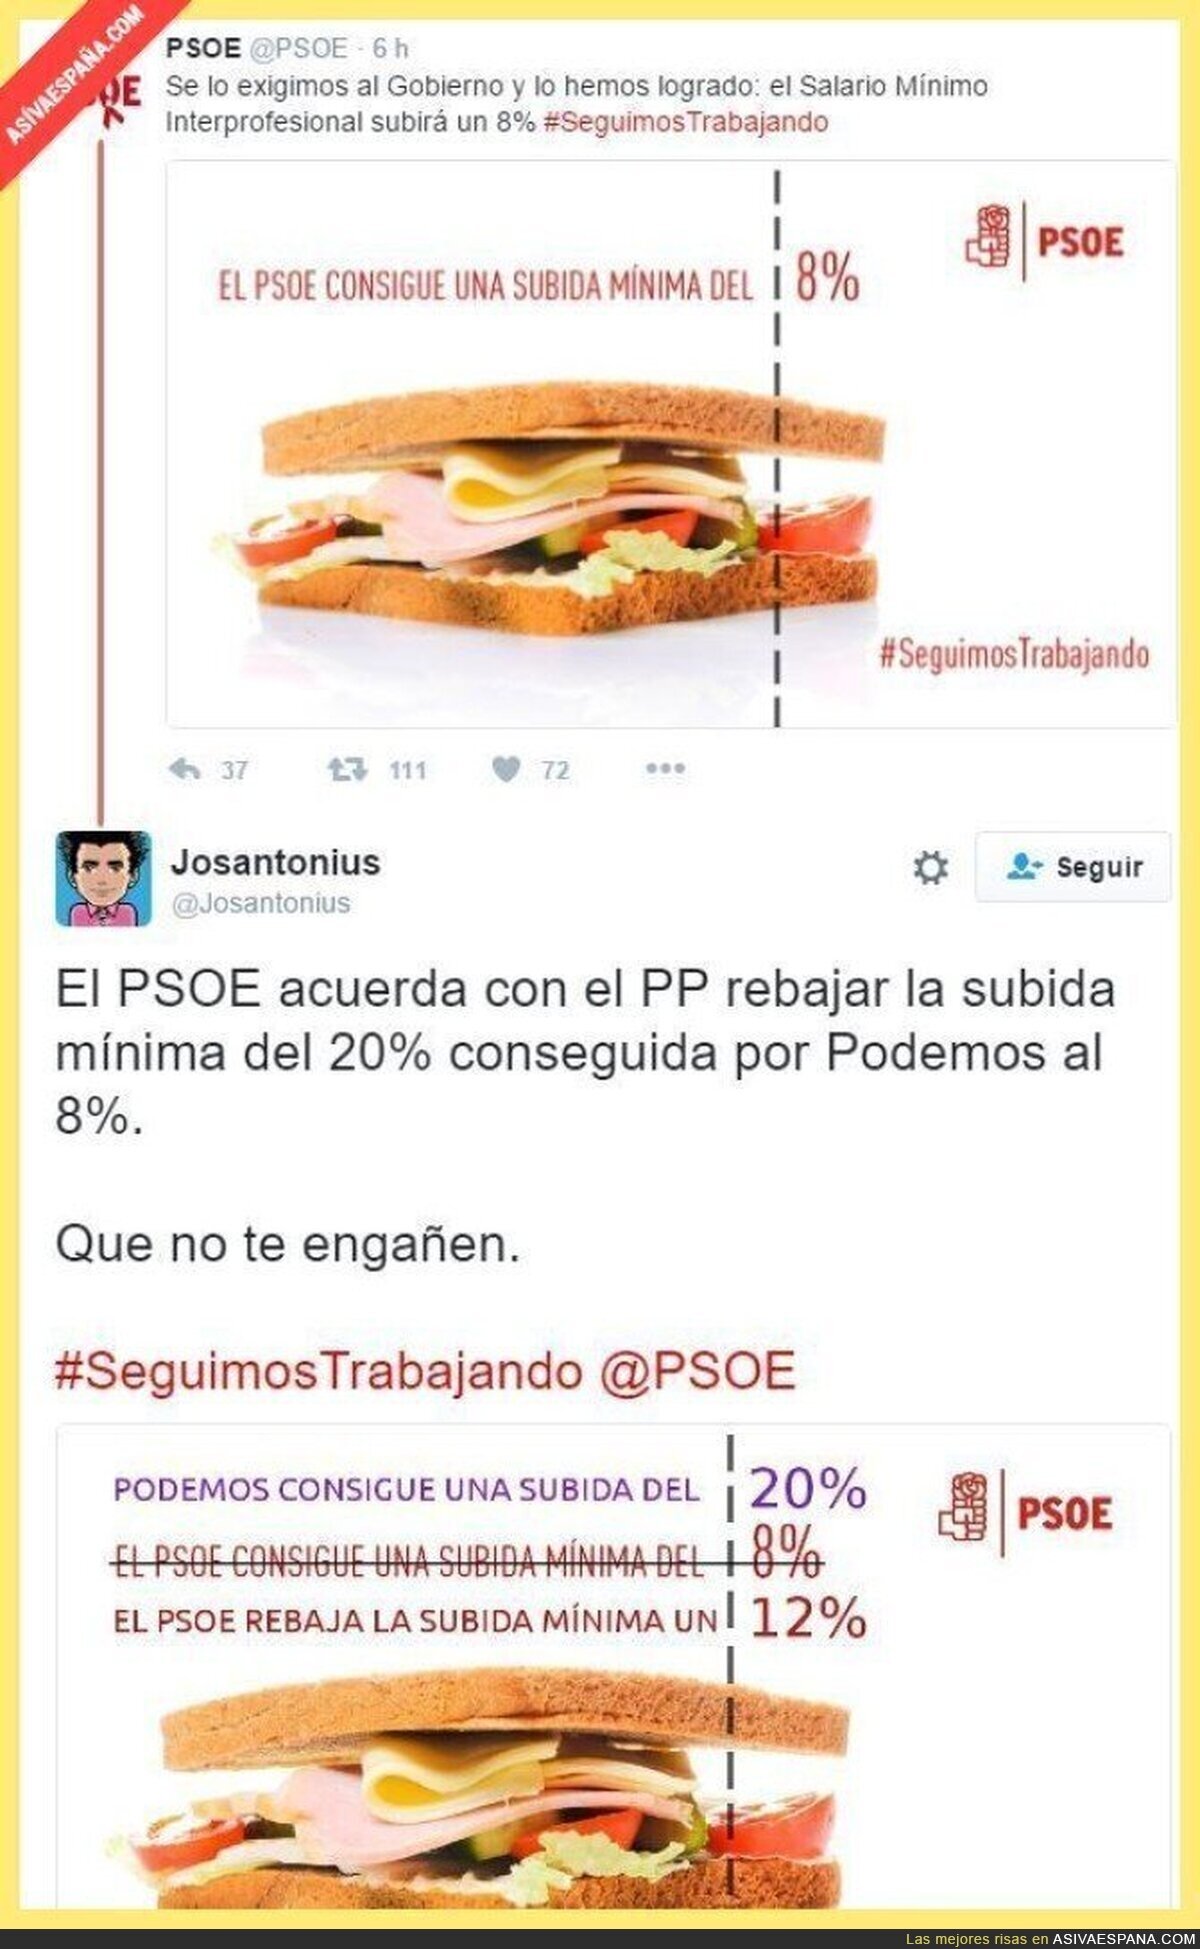 La realidad sobre la subida salarial que se atribuye falsamente el PSOE